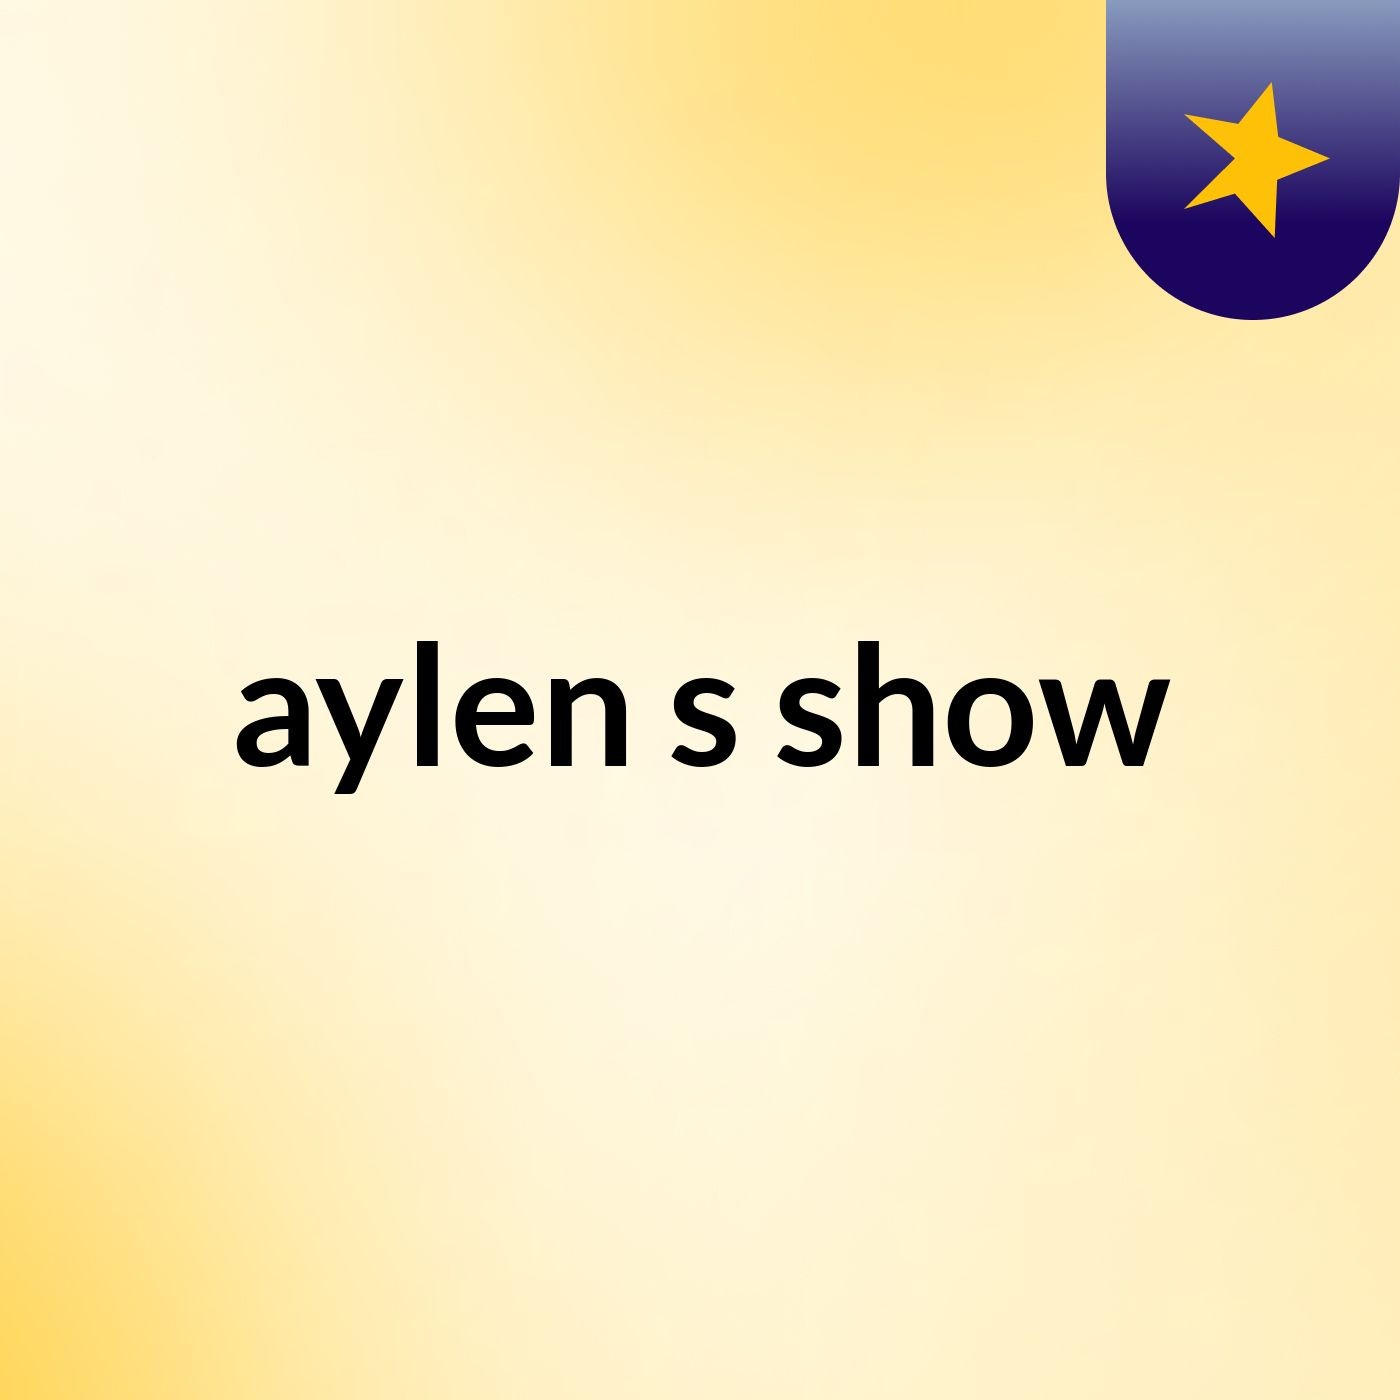 aylen's show